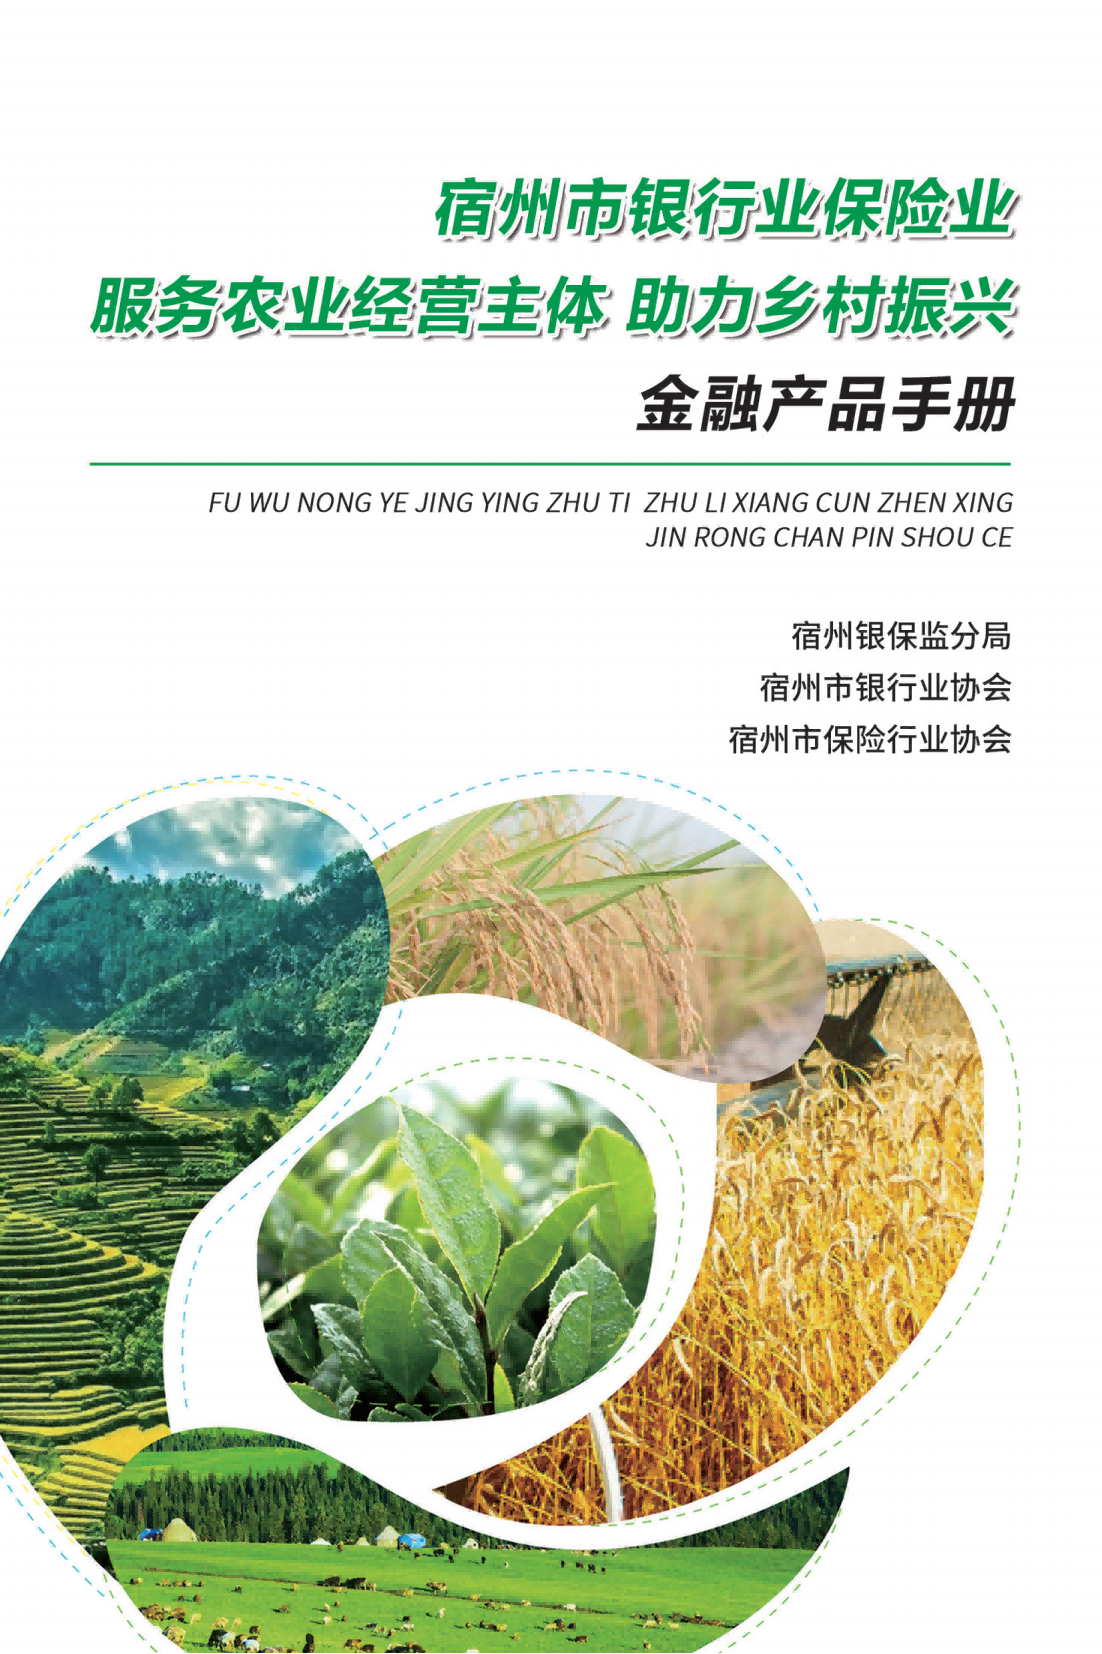 宿州市金融服务新型农业经营主体助力乡村振兴业务宣传手册